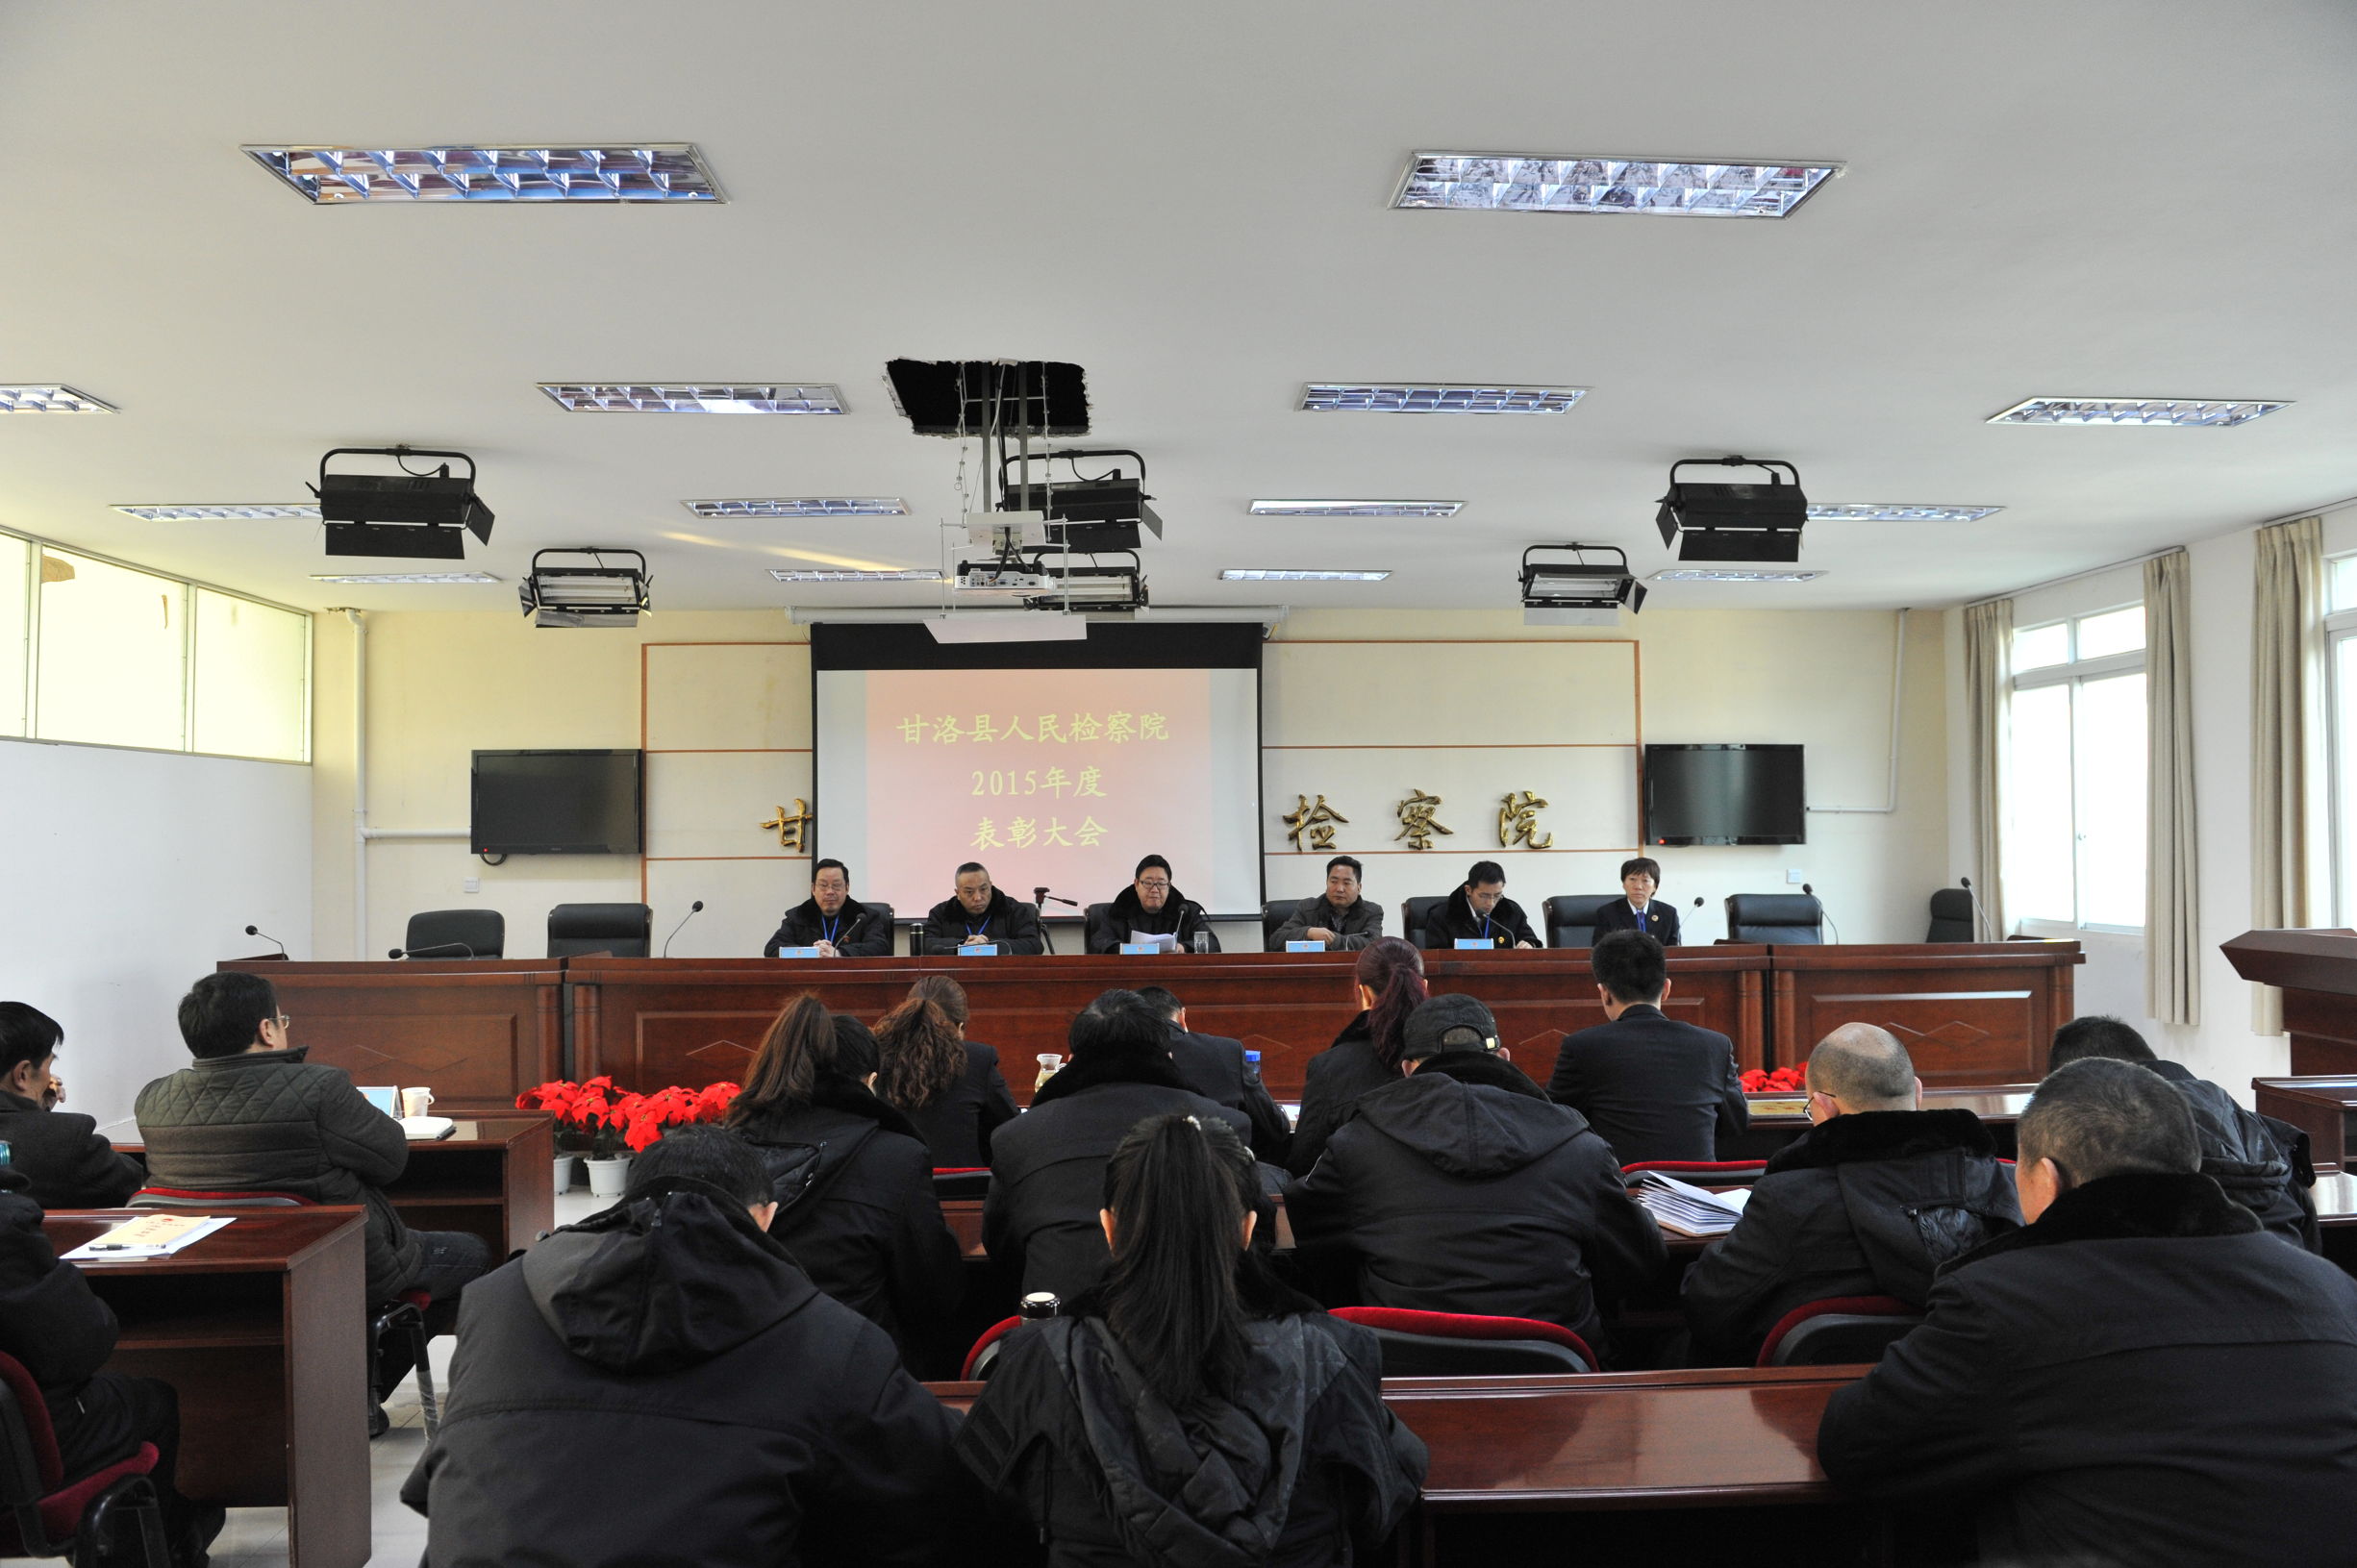 甘洛县检察院召开2015年度总结表彰暨2016年工作部署大会